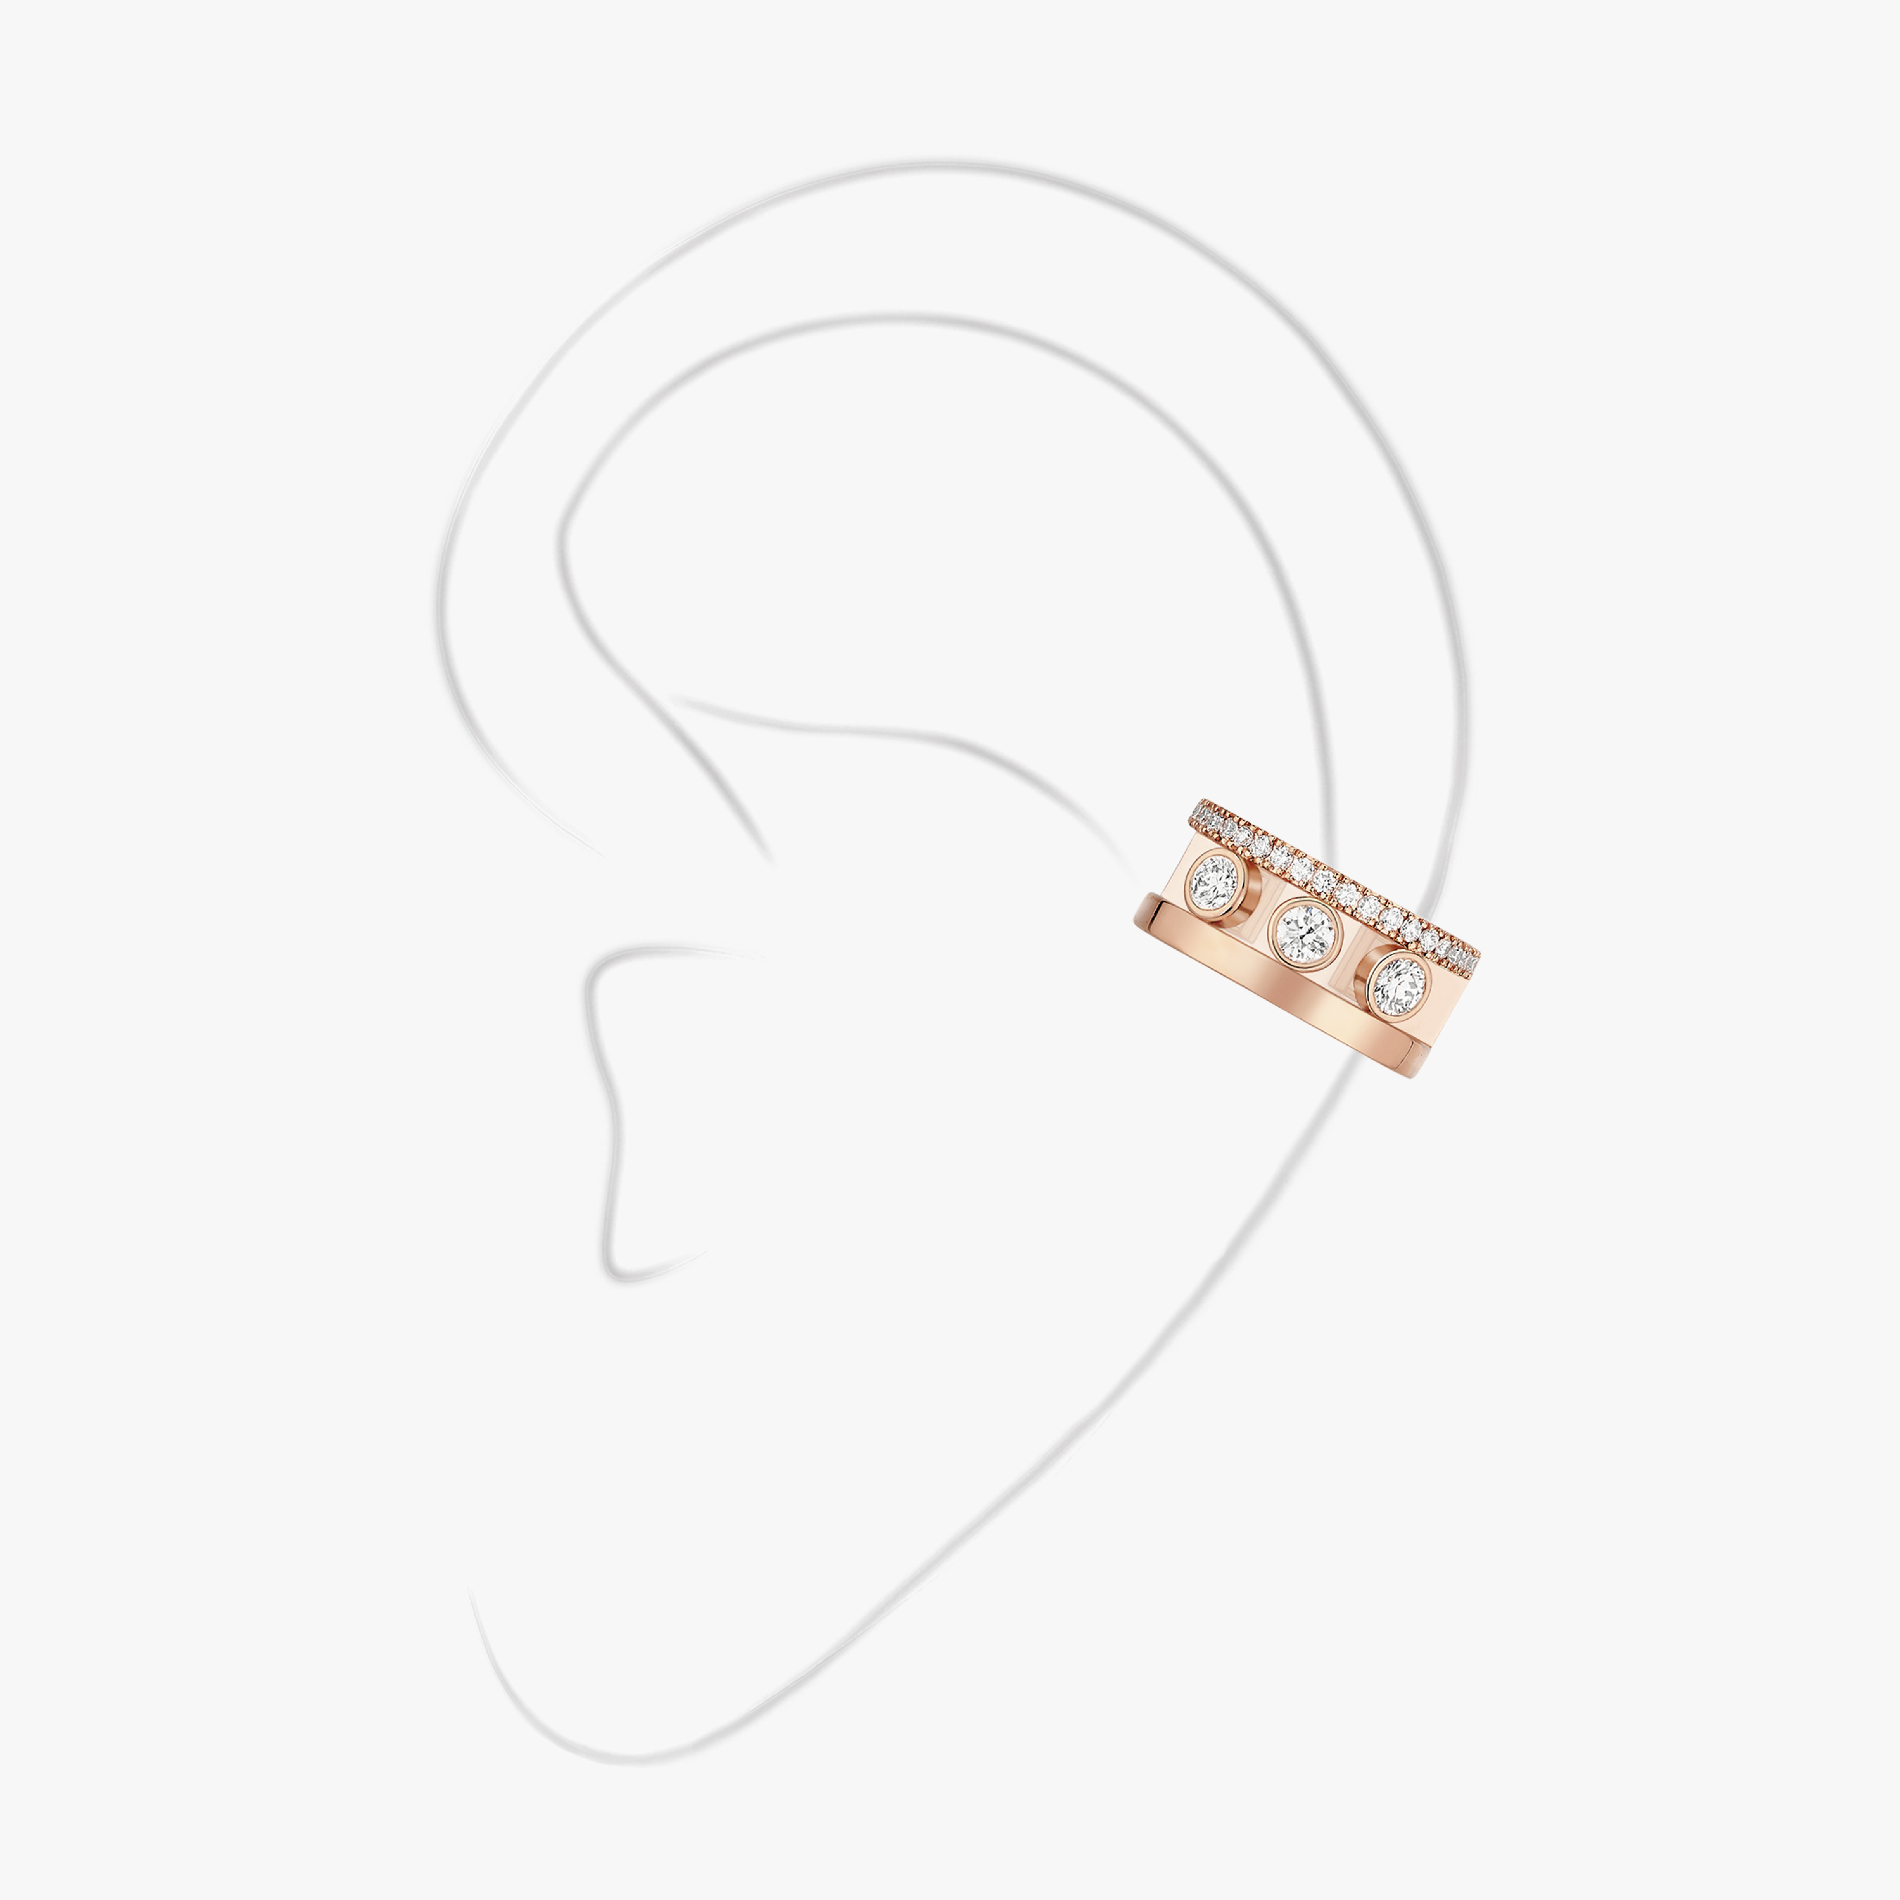 Move Romane Earring clip  Pink Gold For Her Diamond Earrings 10120-PG